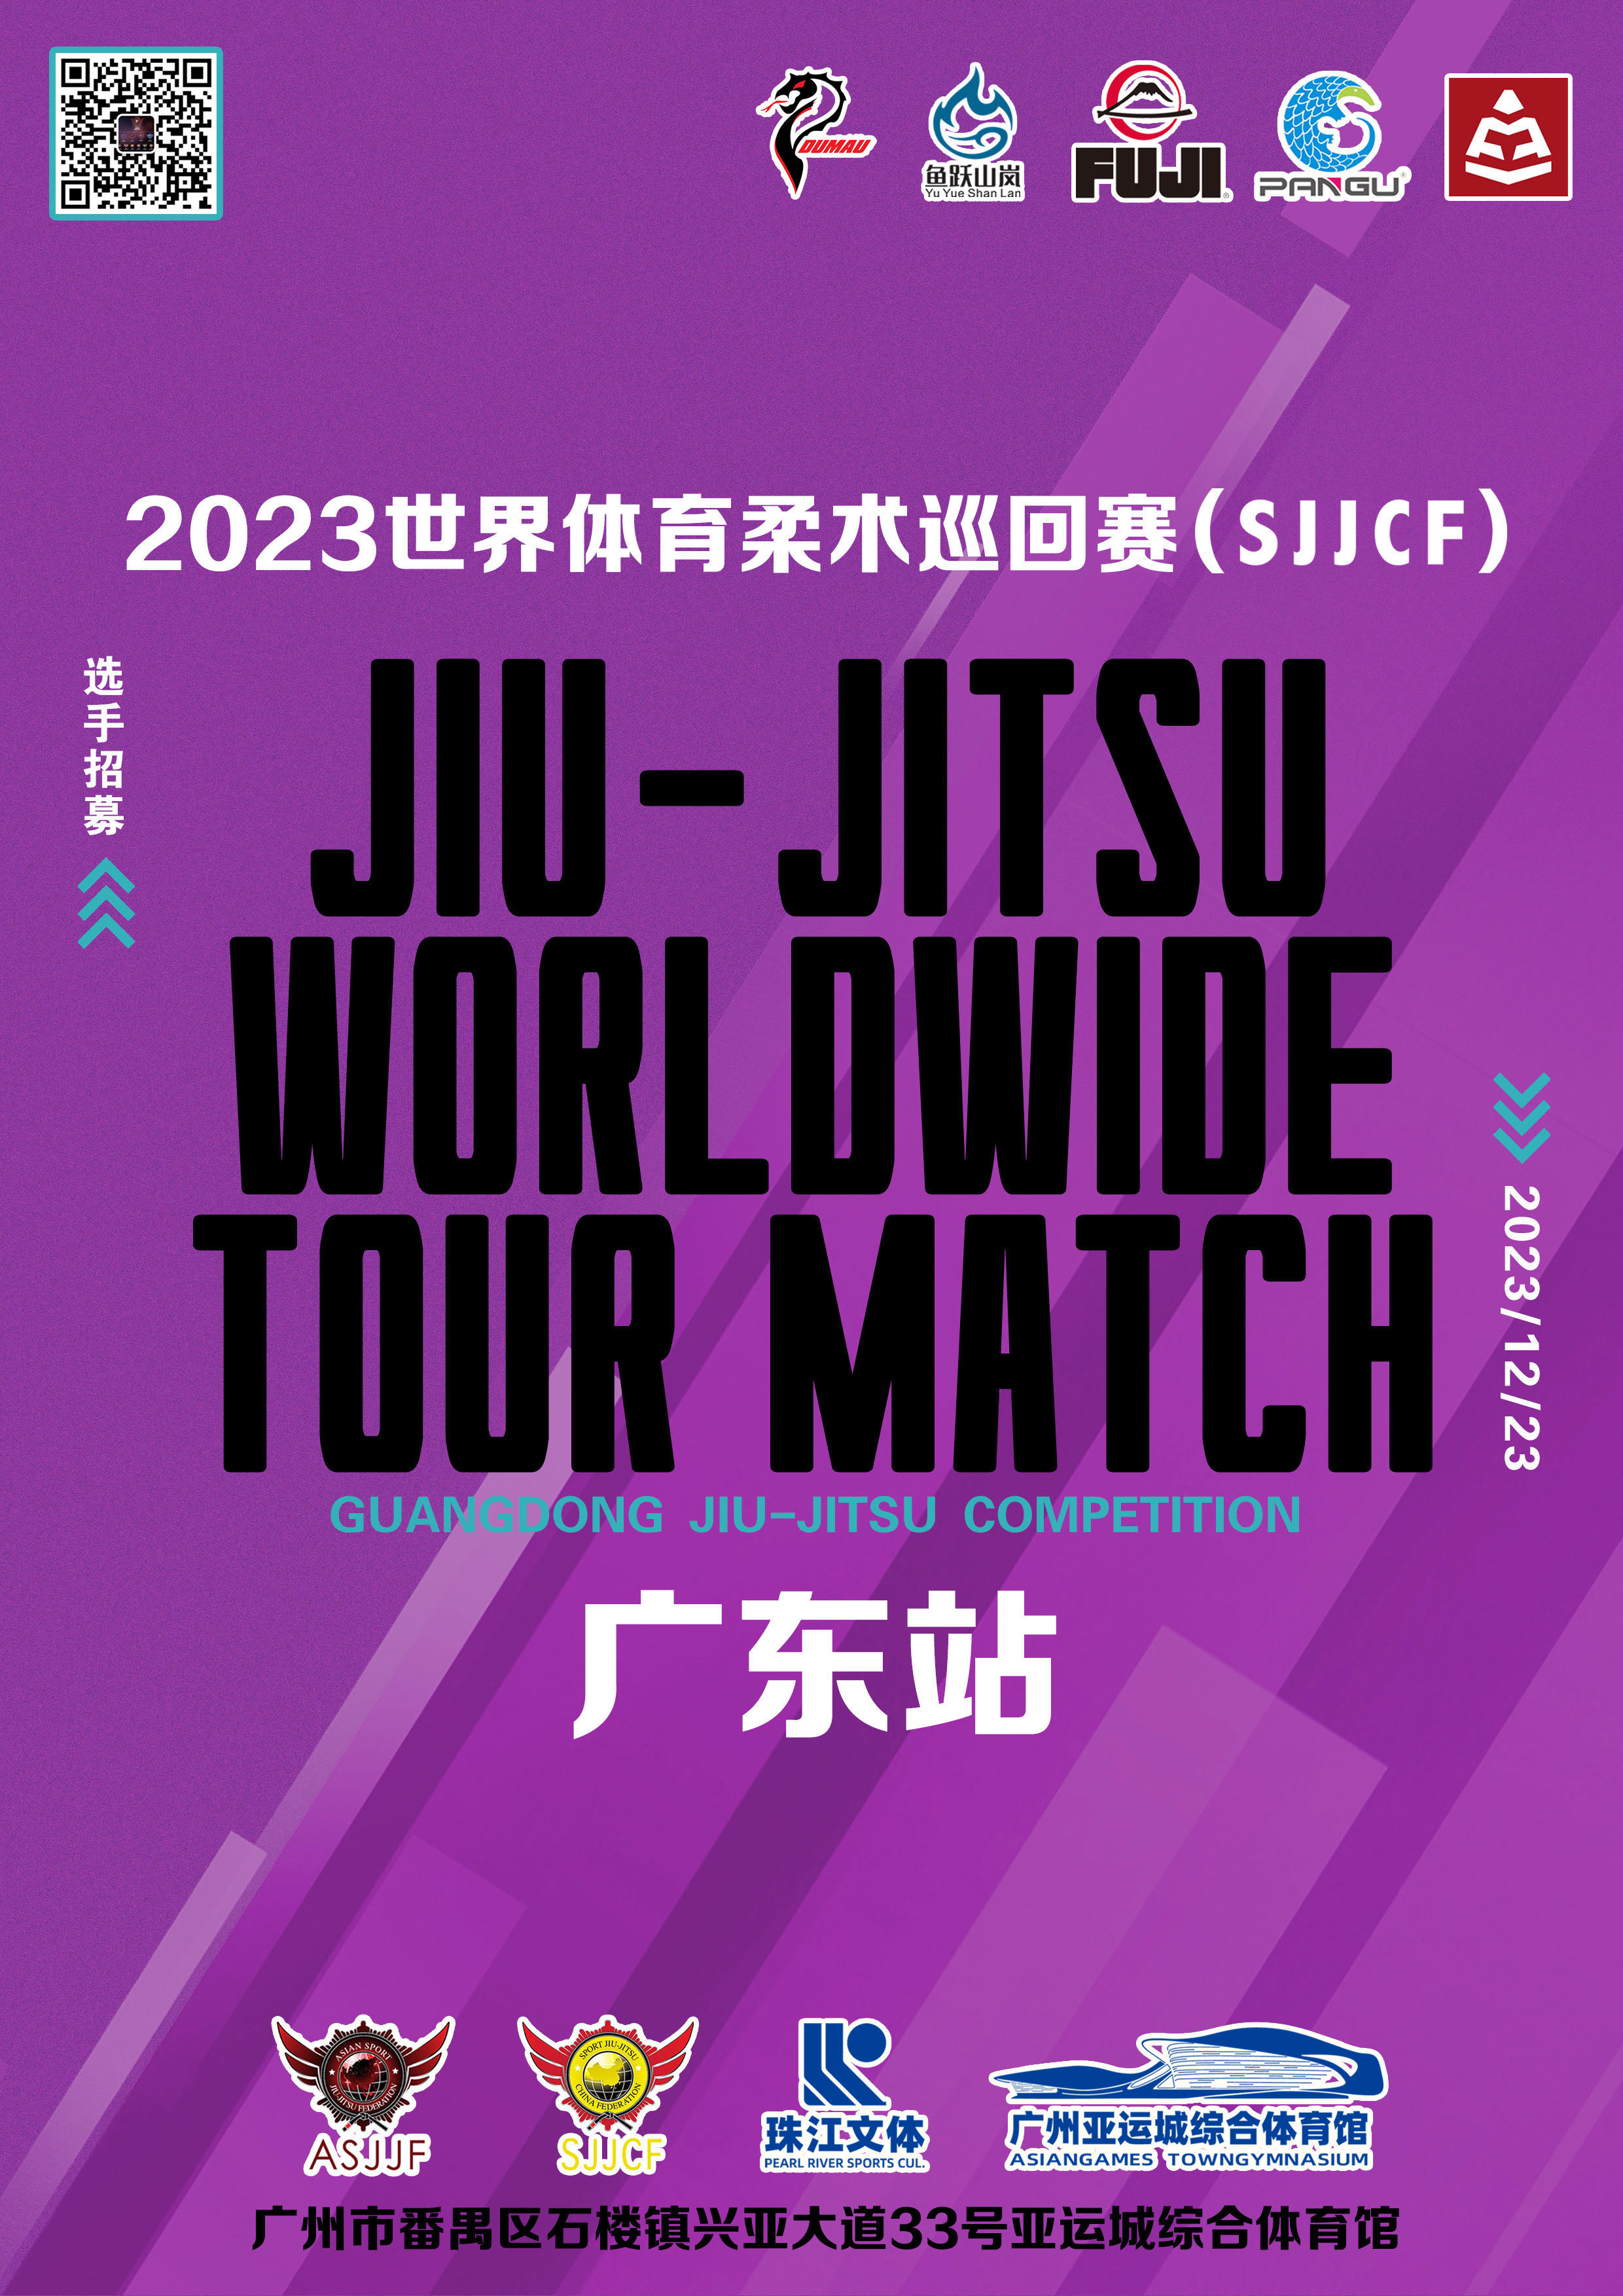 sjjcf guangdong jiu jitsu championship 2023